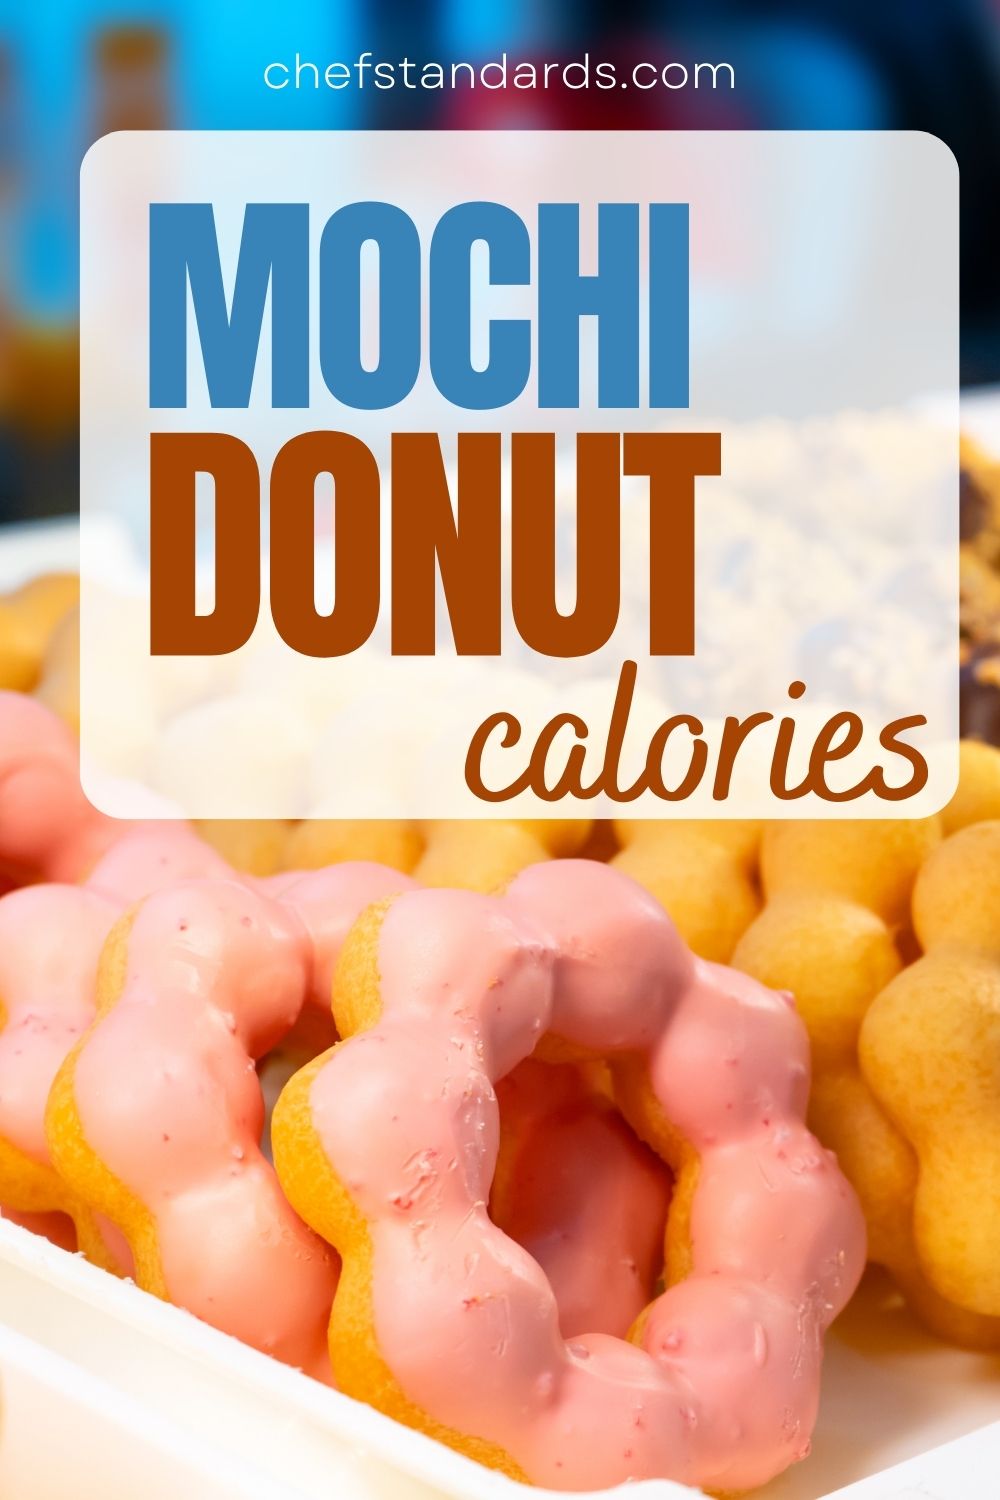 Calorías y desglose nutricional de su donut de mochi 